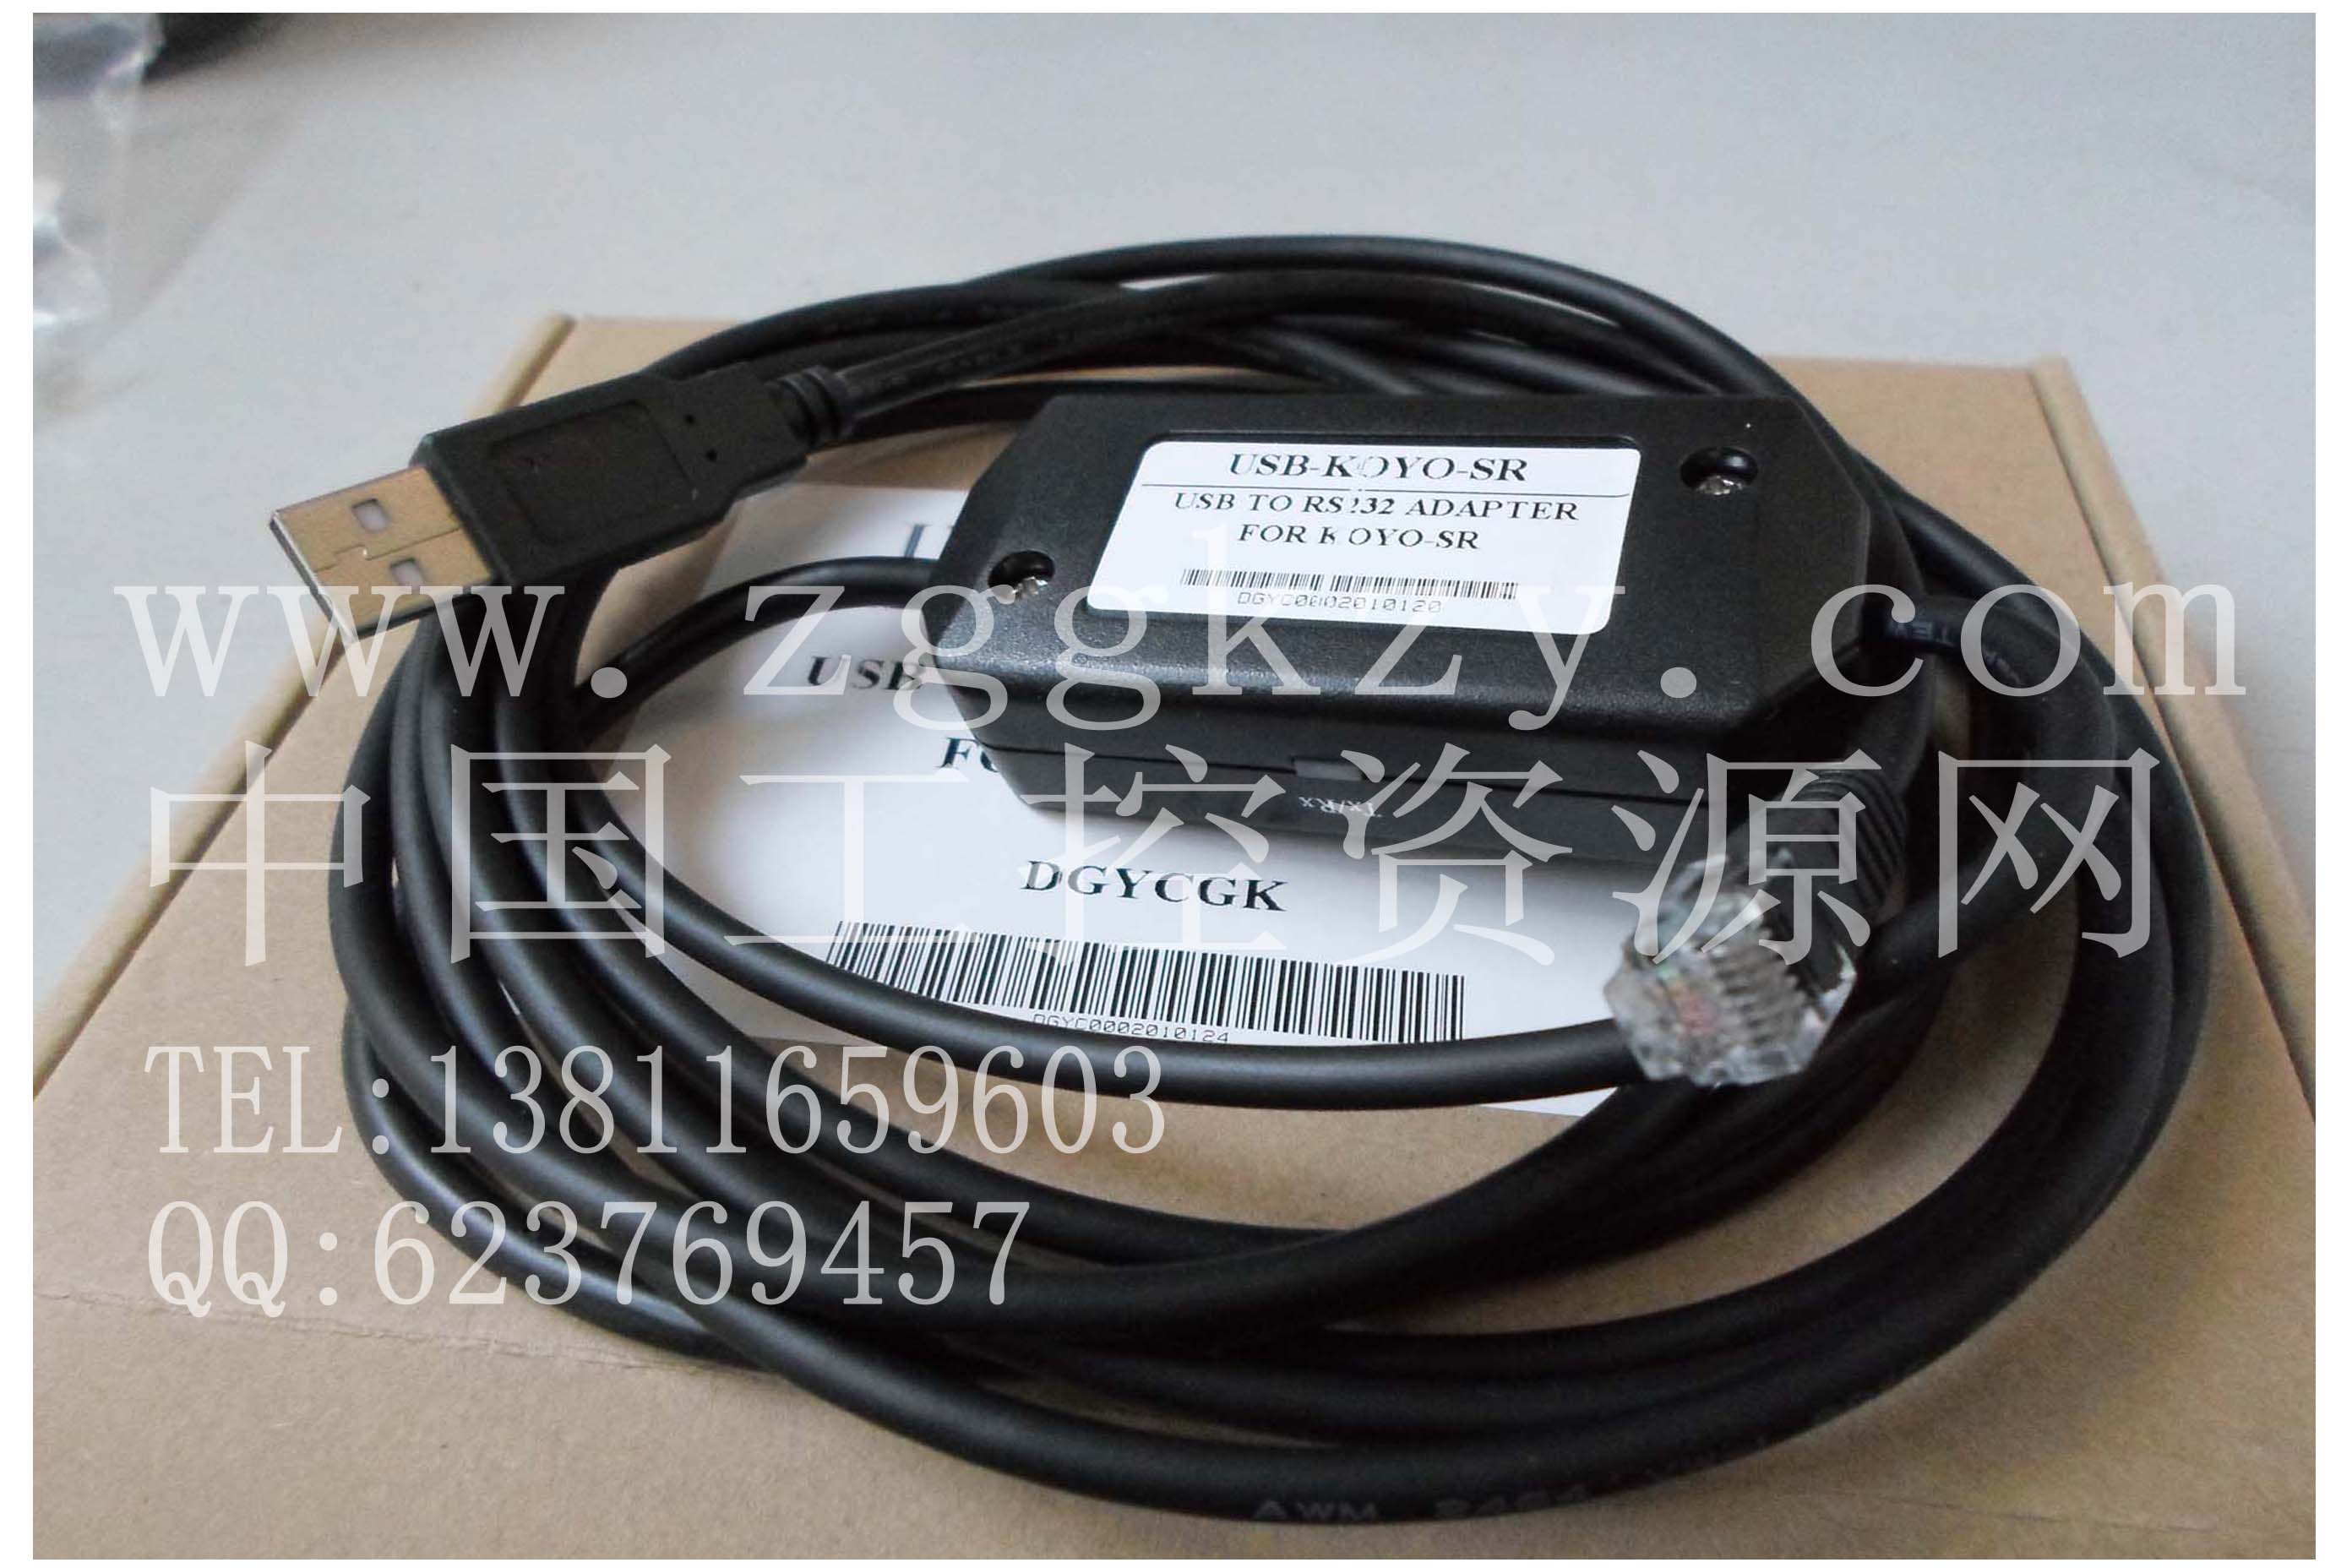 销售光洋USB-KOYO-SR编程电缆